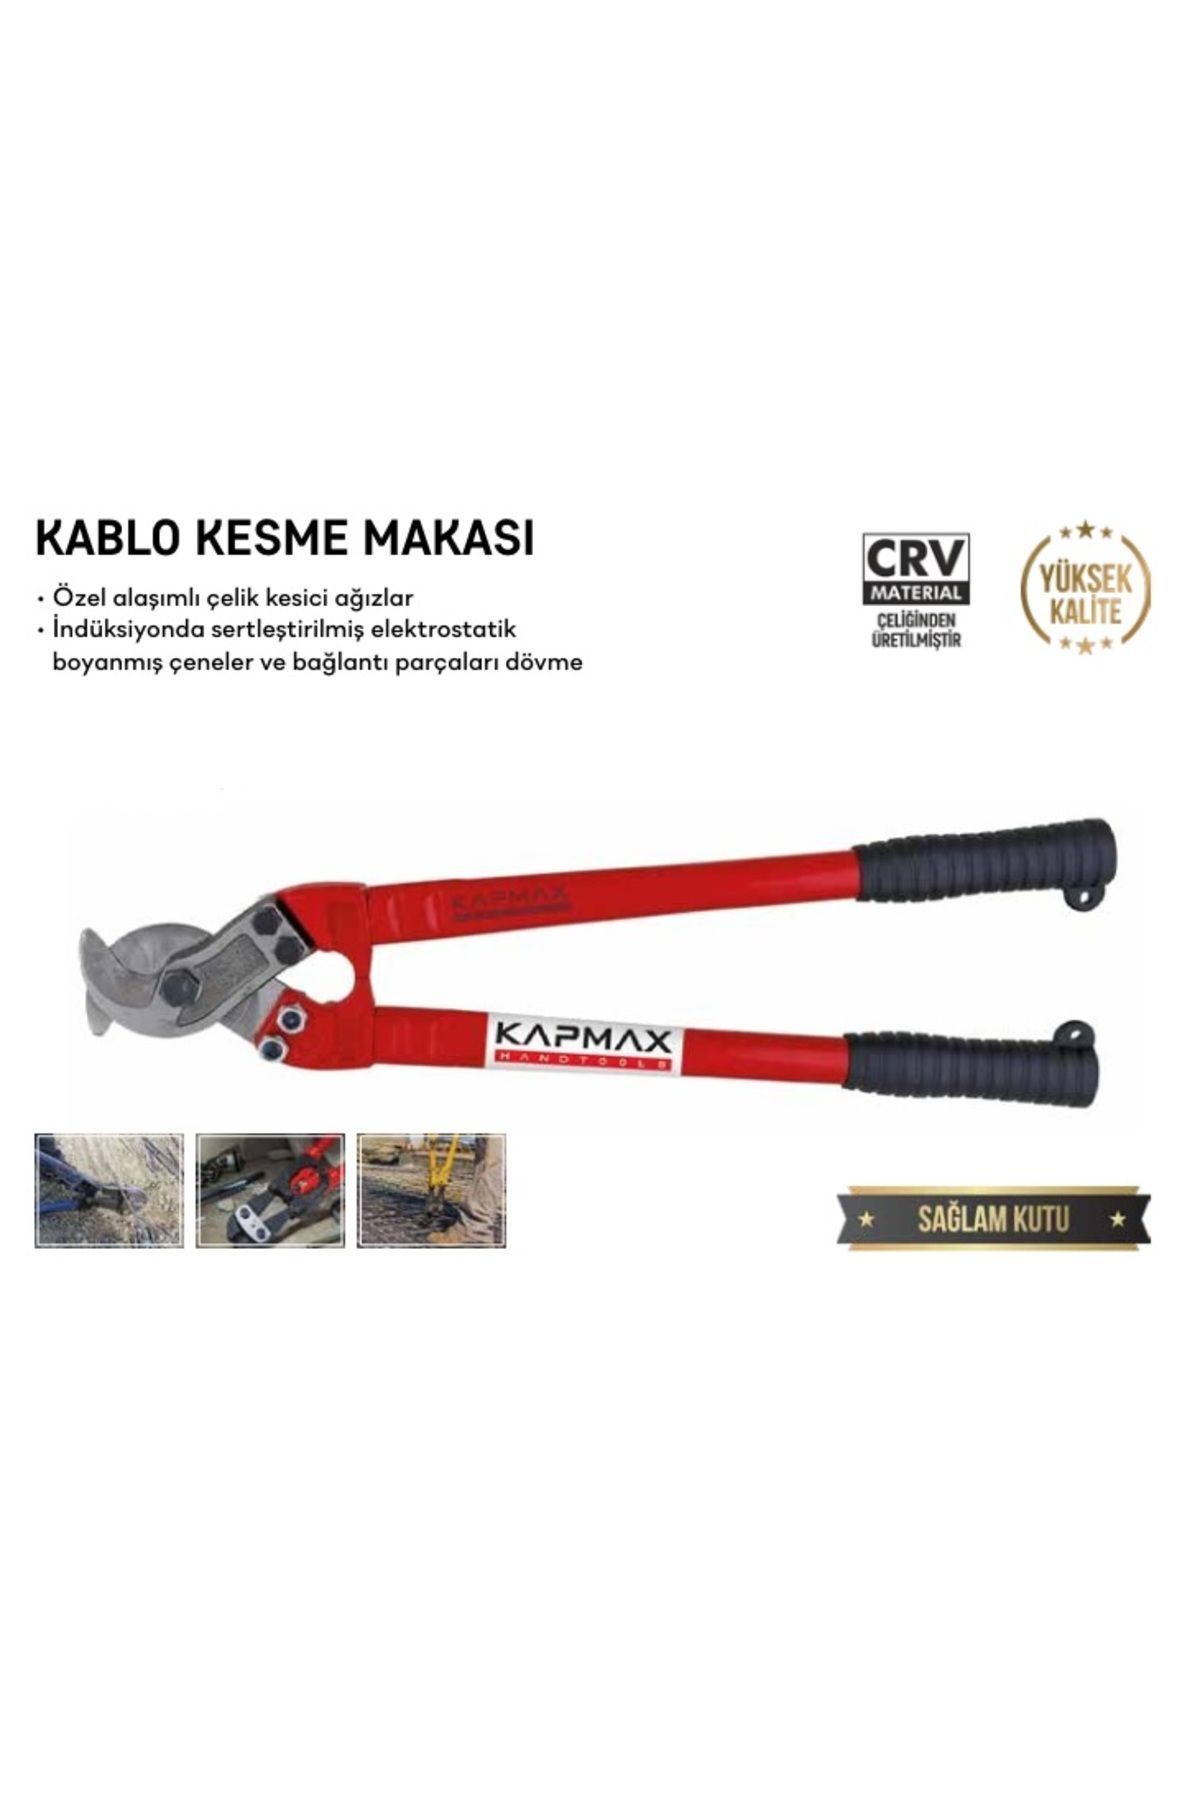 KAPMAX KABLO KESME MAKASI 32x800 mm